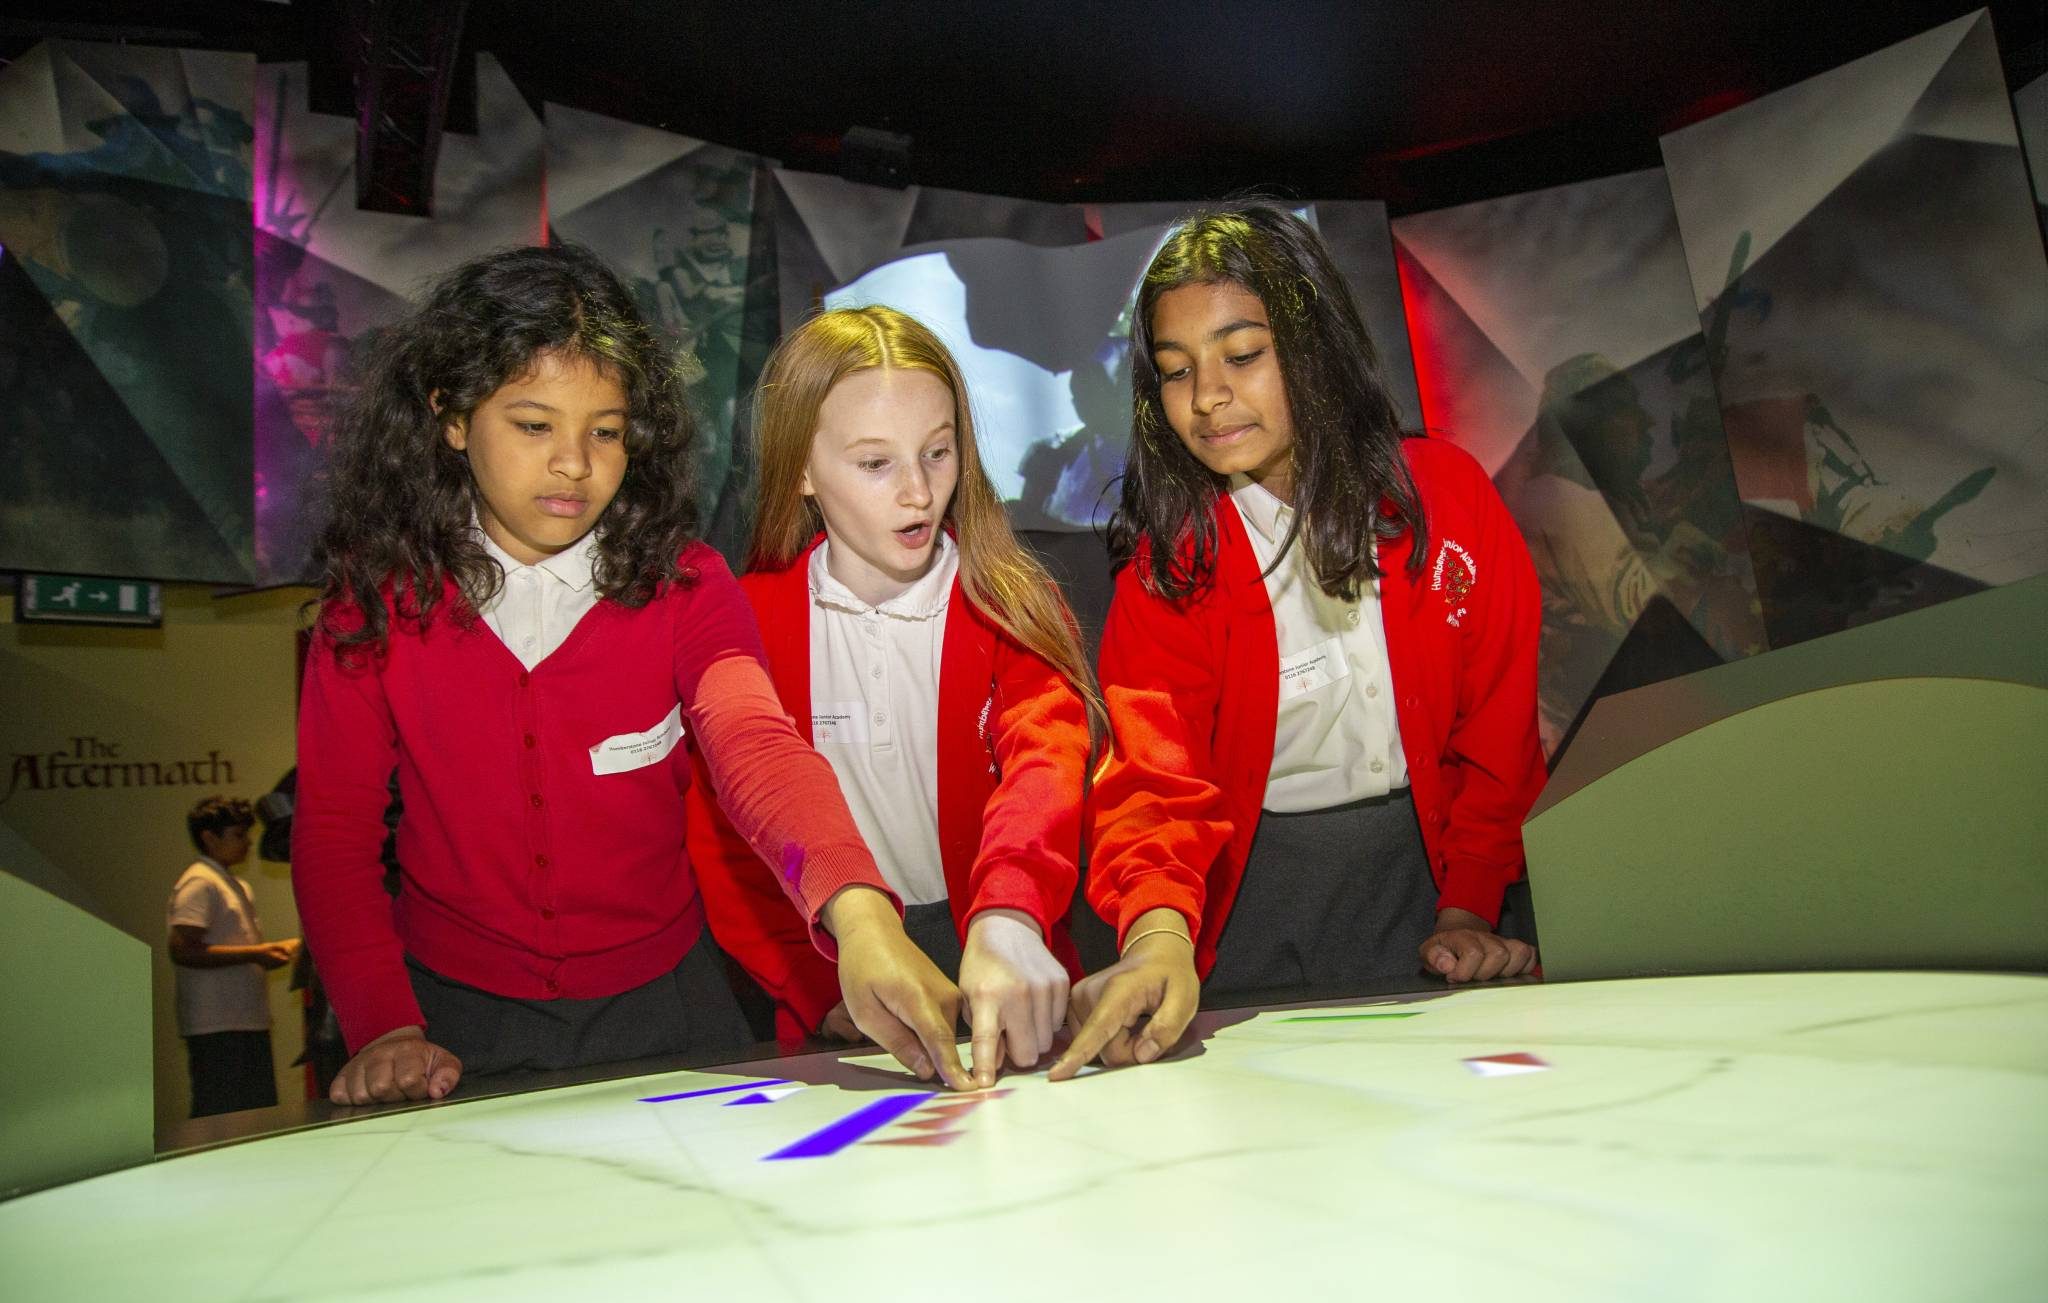 School children looking at interactive exhibit